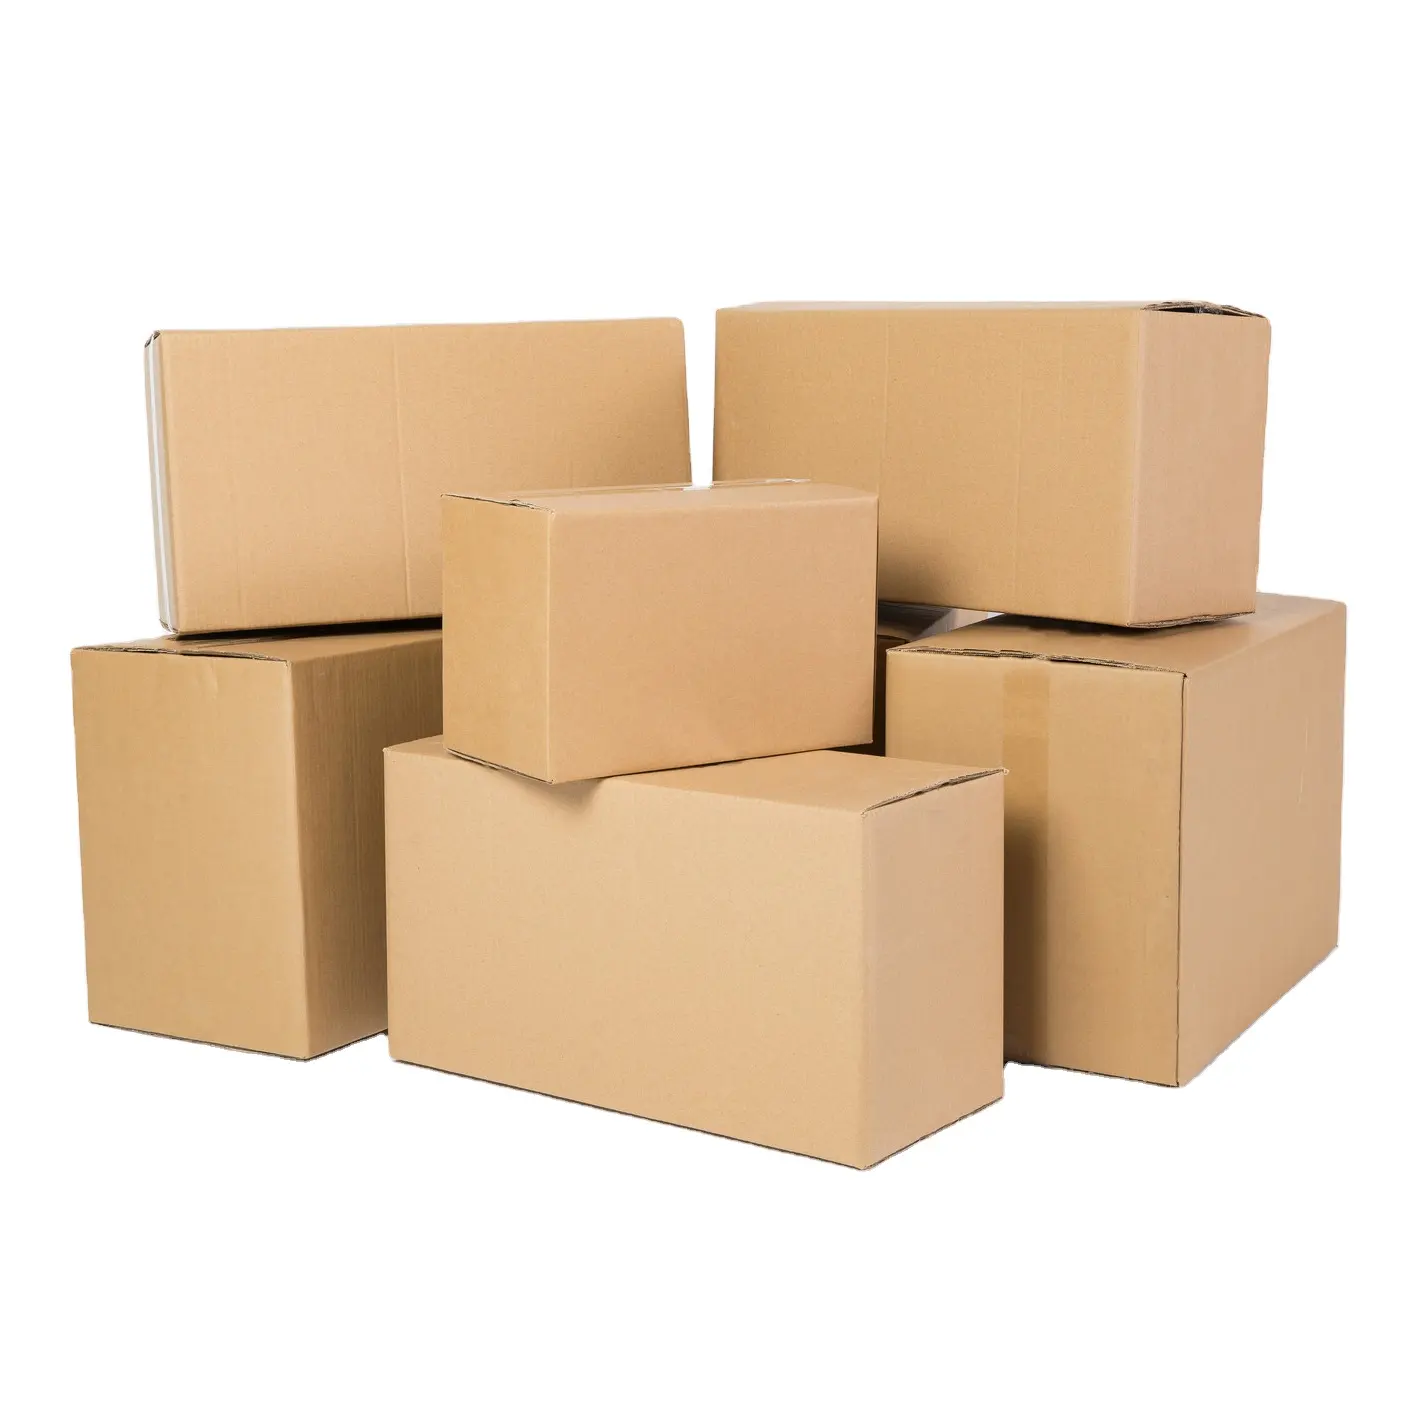 Caixas de armazenamento fortes de 5 camadas com marca personalizada, grandes placas de papelão ondulado, embalagens de papelão por atacado, caixas de transporte em movimento